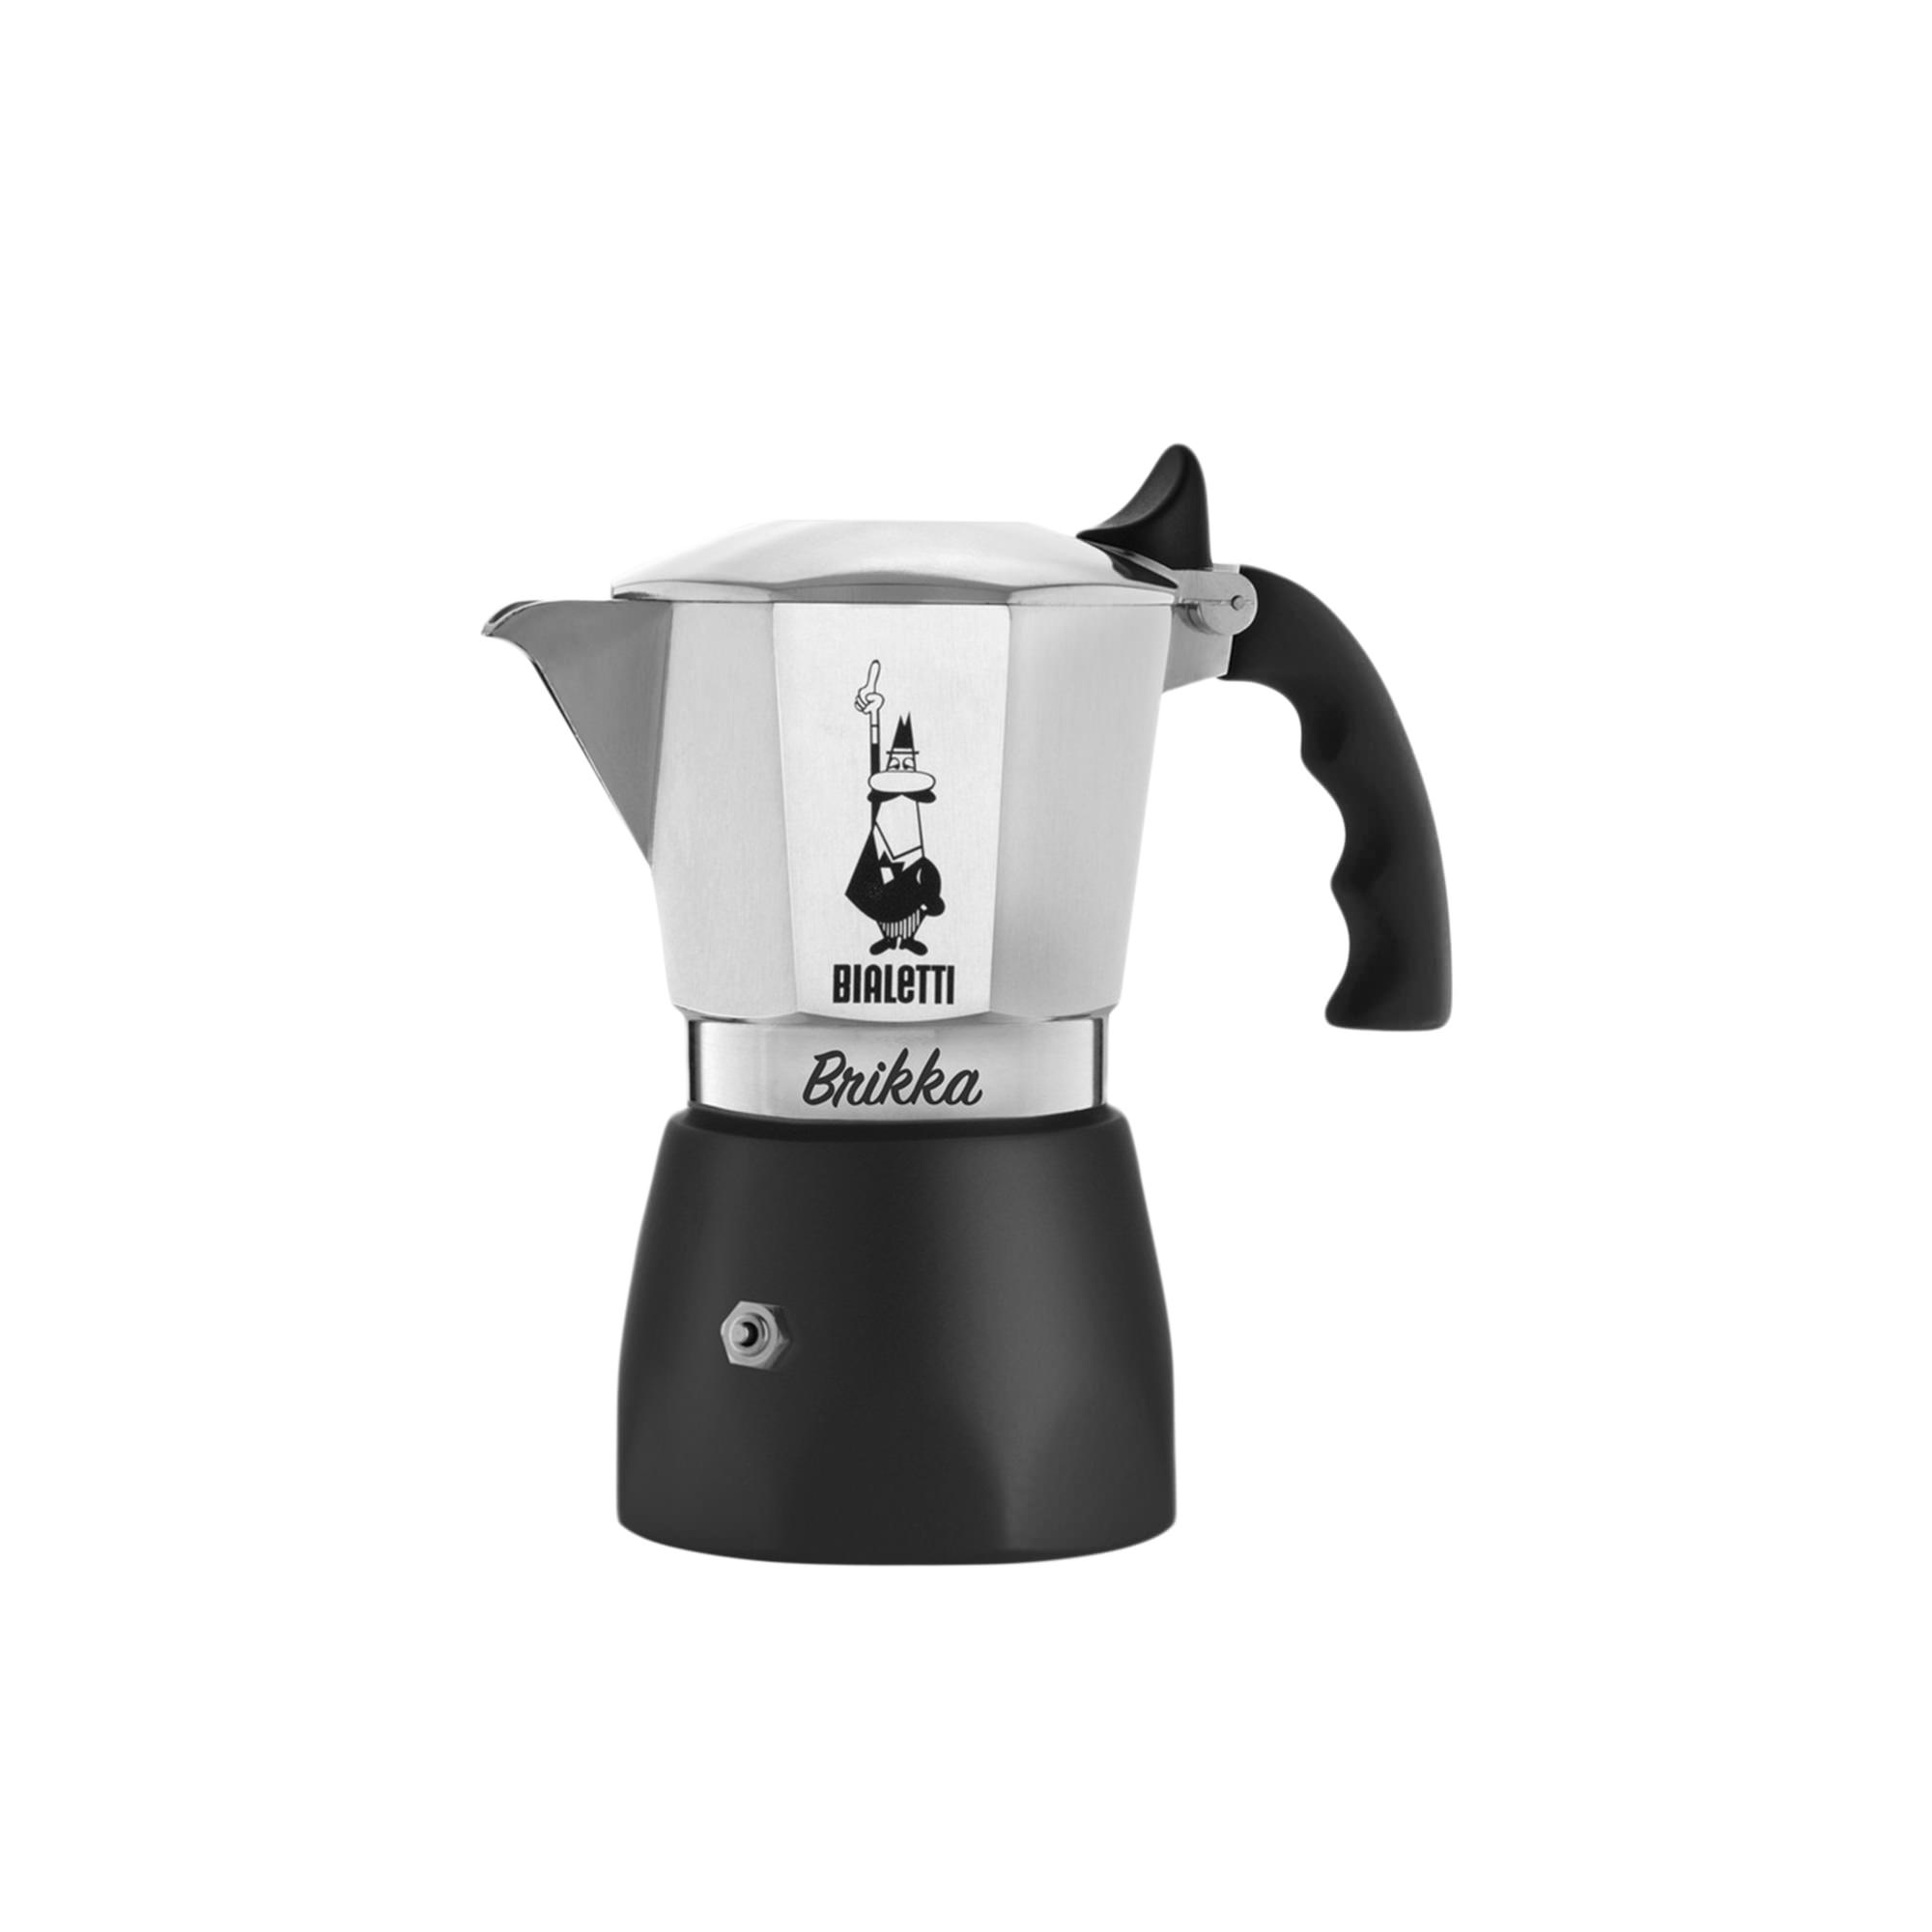 Bialetti Brikka Espresso Maker 2 Cup Silver Image 1